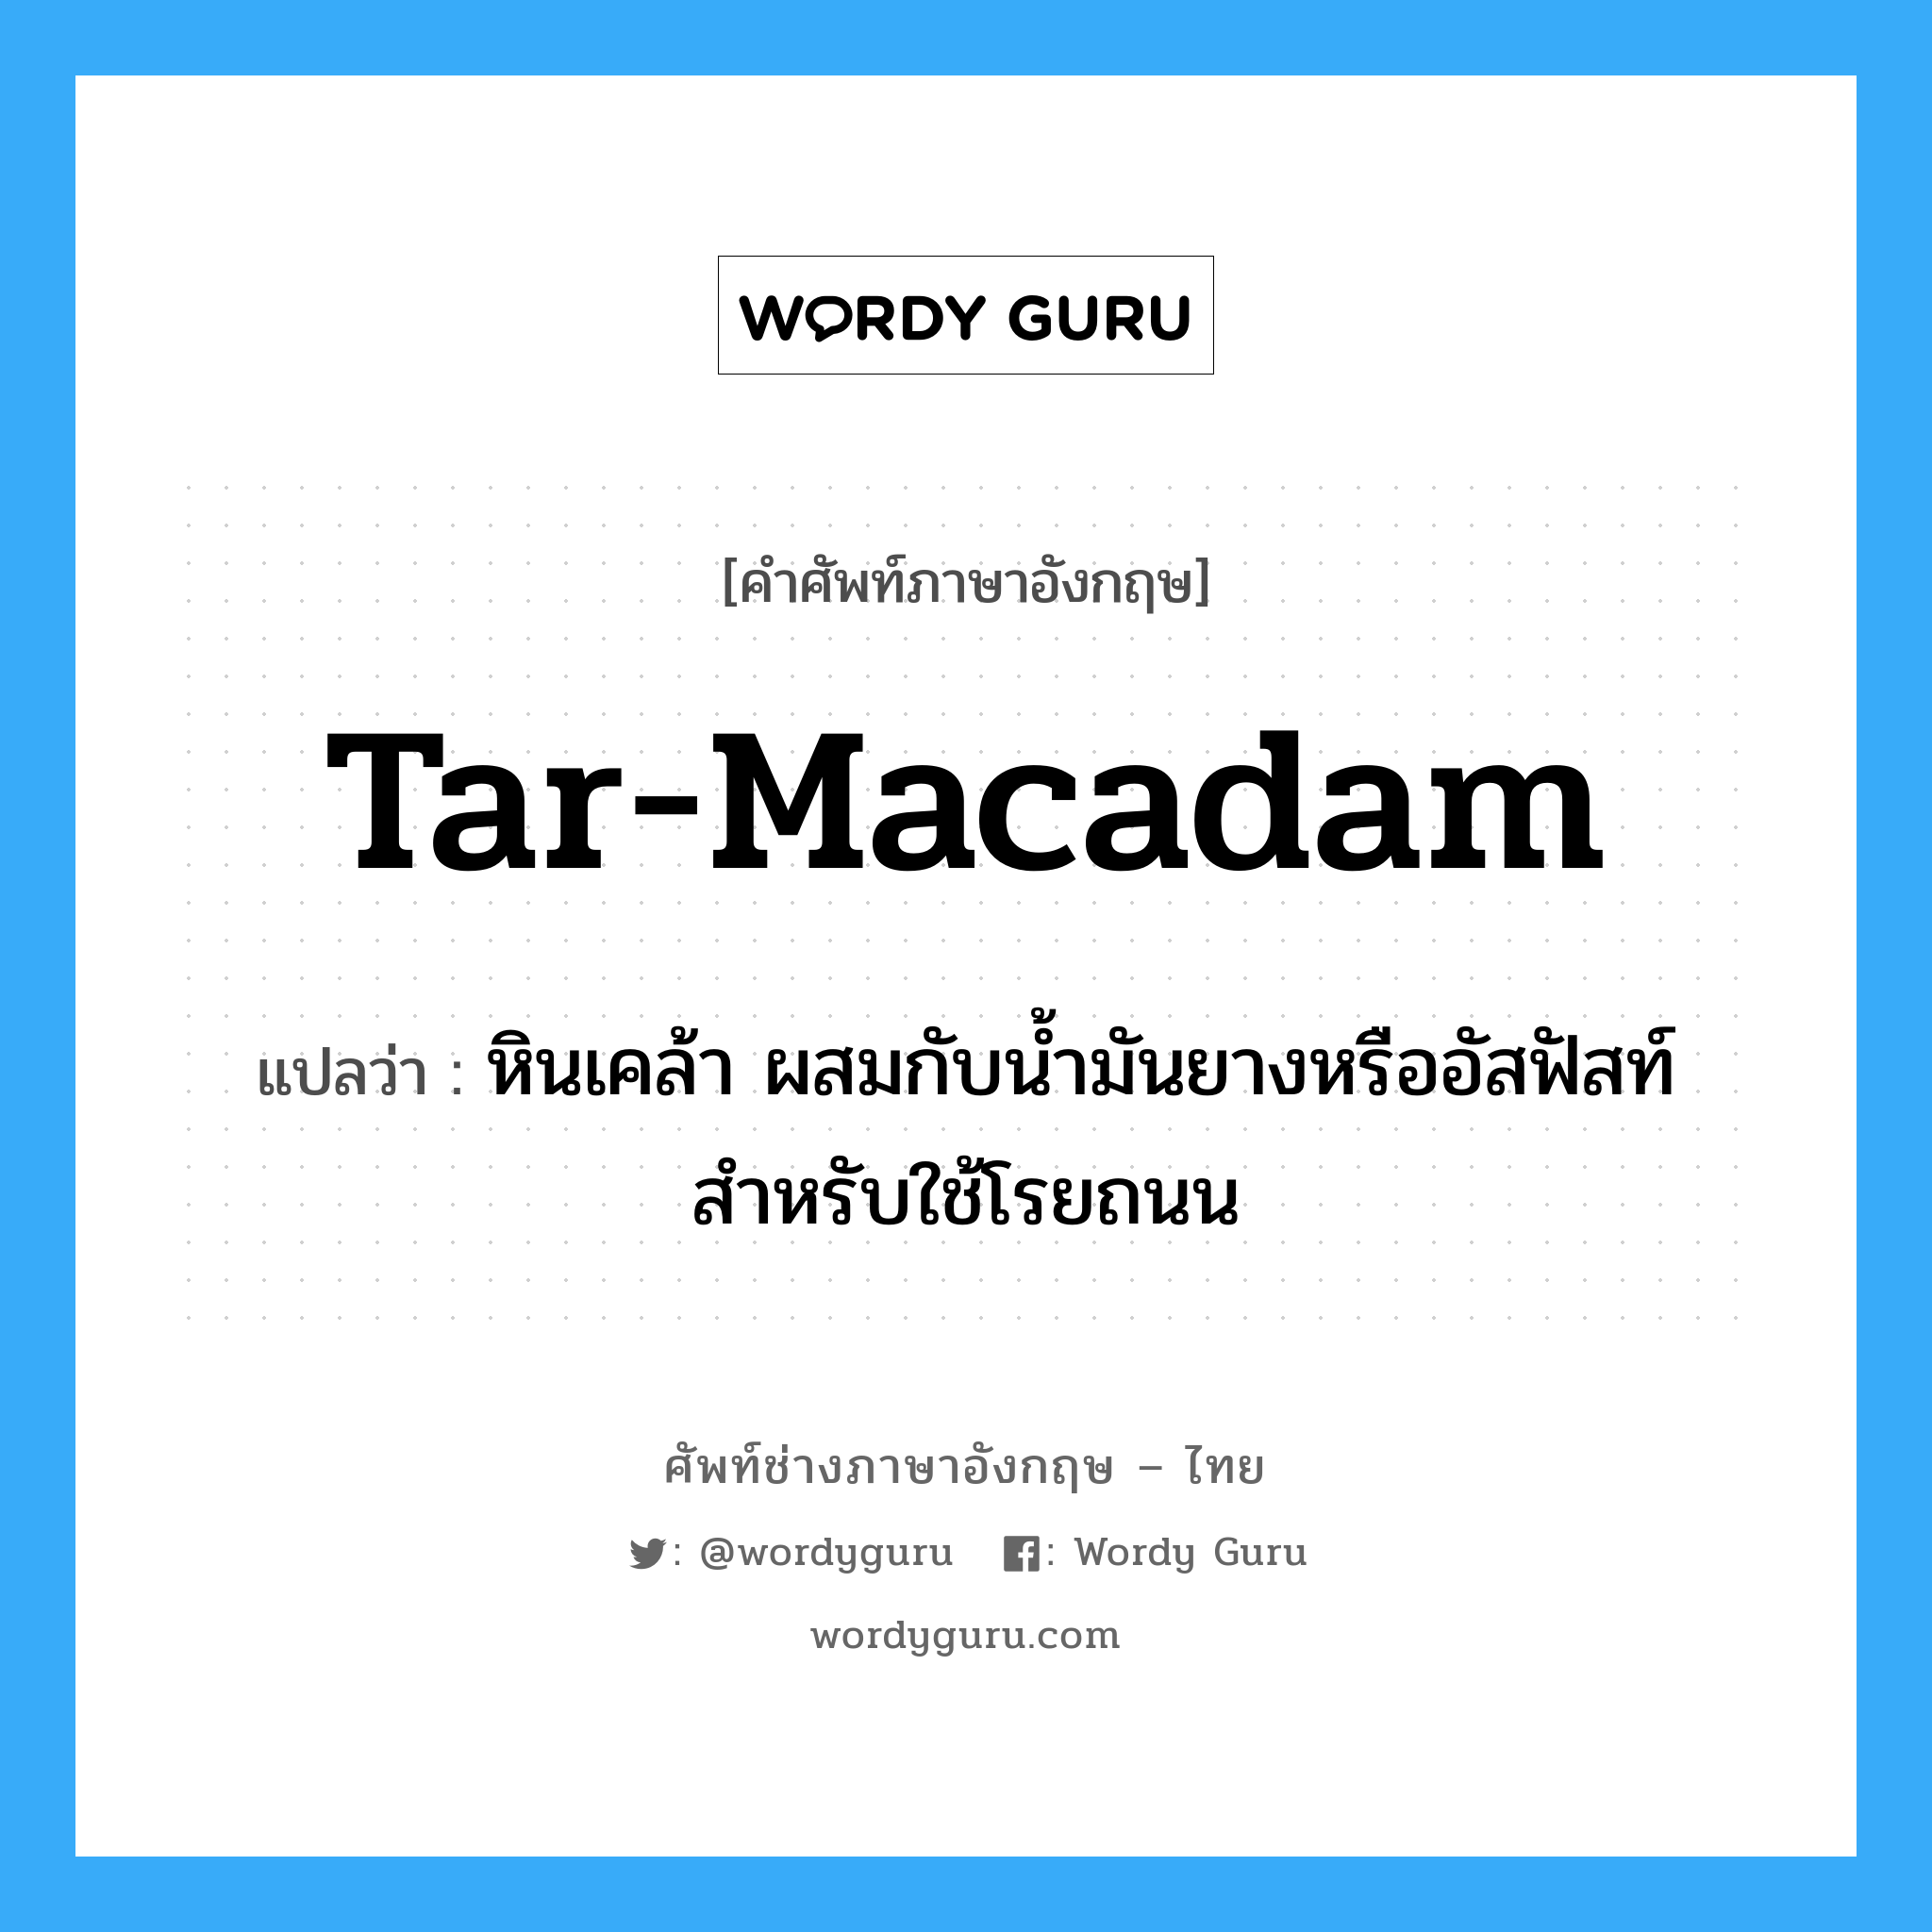 tar-macadam แปลว่า?, คำศัพท์ช่างภาษาอังกฤษ - ไทย tar-macadam คำศัพท์ภาษาอังกฤษ tar-macadam แปลว่า หินเคล้า ผสมกับน้ำมันยางหรืออัสฟัสท์ สำหรับใช้โรยถนน